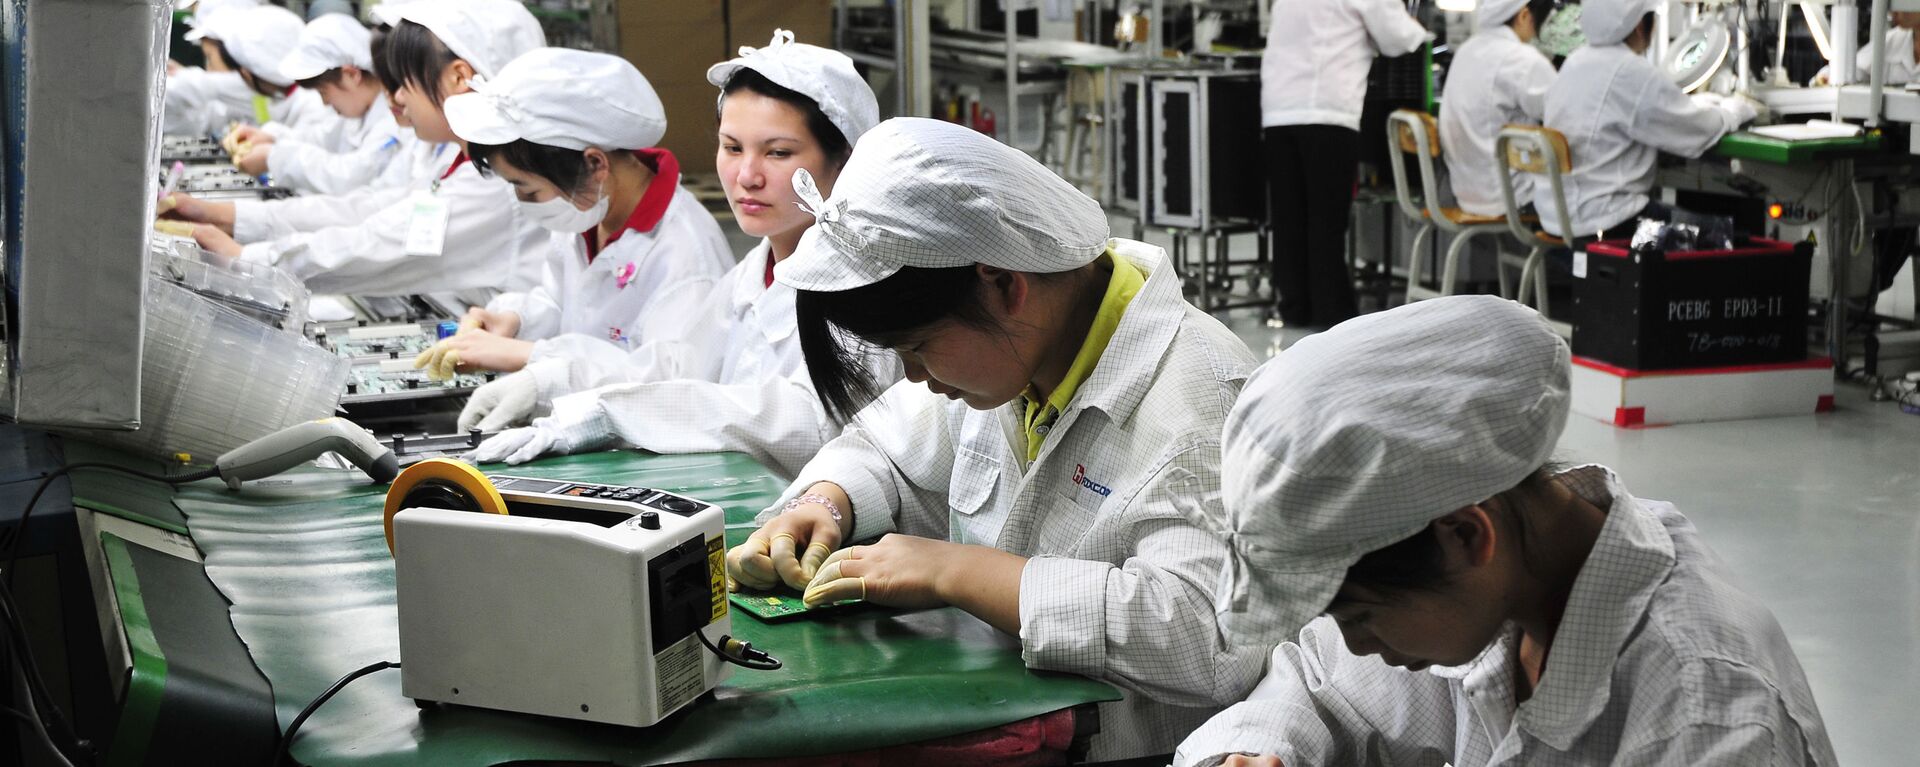 Công nhân làm việc trong phân xưởng của nhà máy Foxconn Technology Group ở Thâm Quyến, Trung Quốc - Sputnik Việt Nam, 1920, 24.03.2021